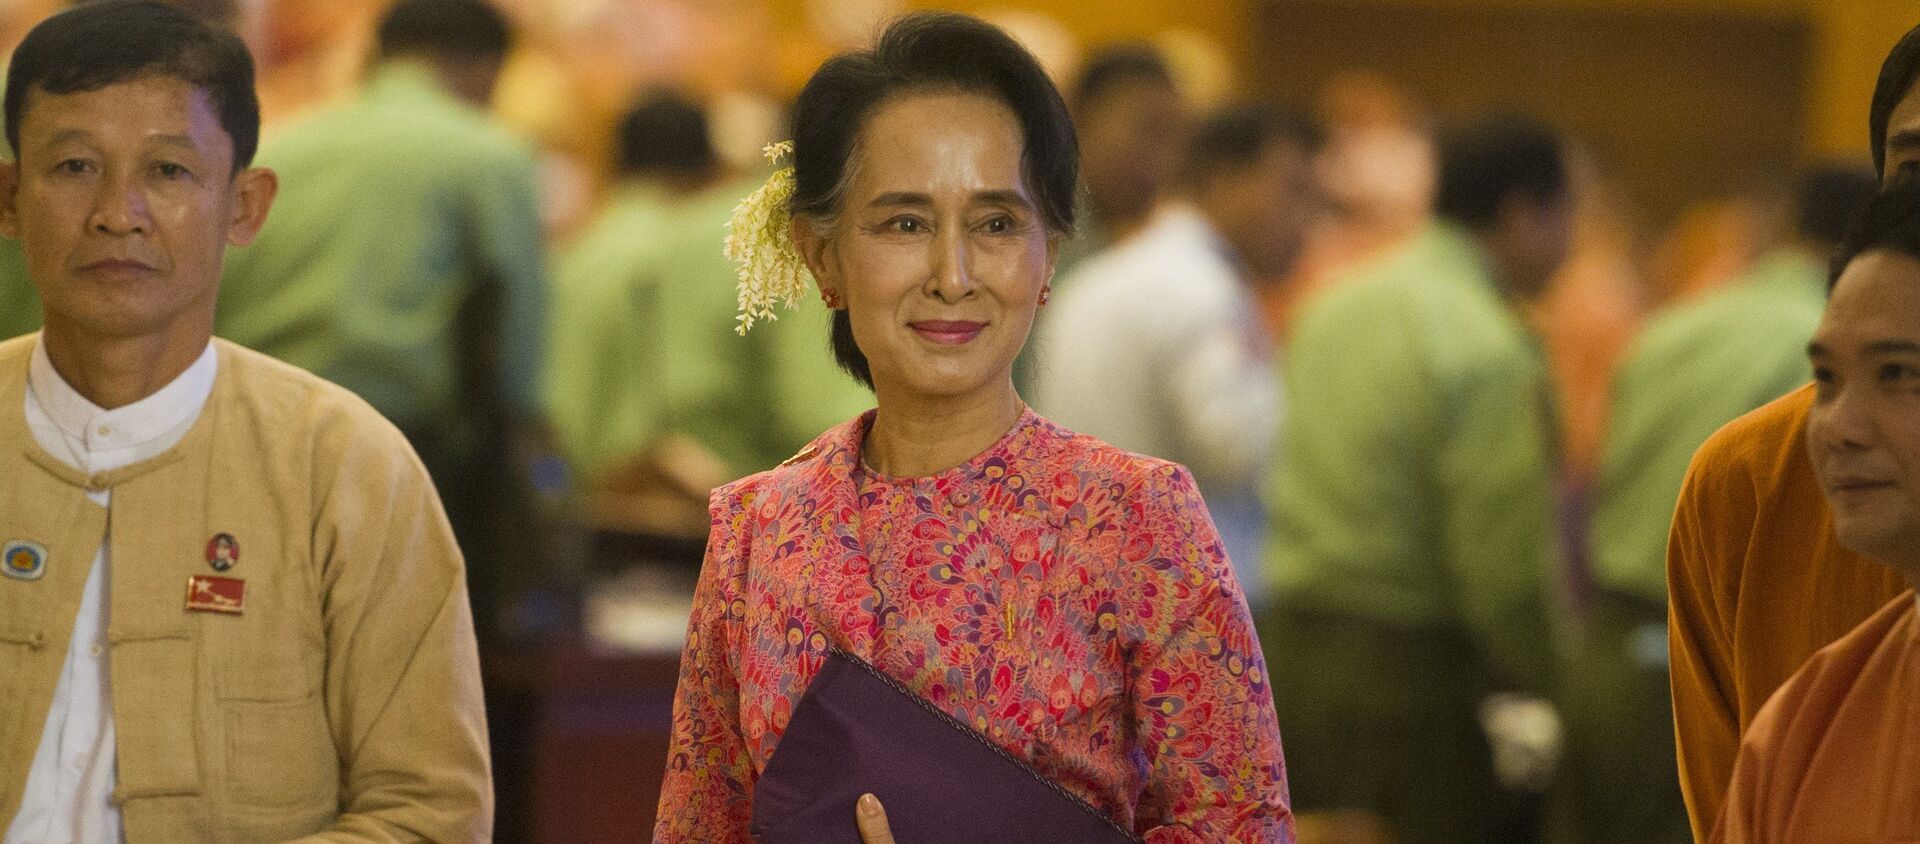 Cựu cố vấn nhà nước của Myanmar, người đoạt giải Nobel Aung San Suu Kyi. - Sputnik Việt Nam, 1920, 13.07.2021